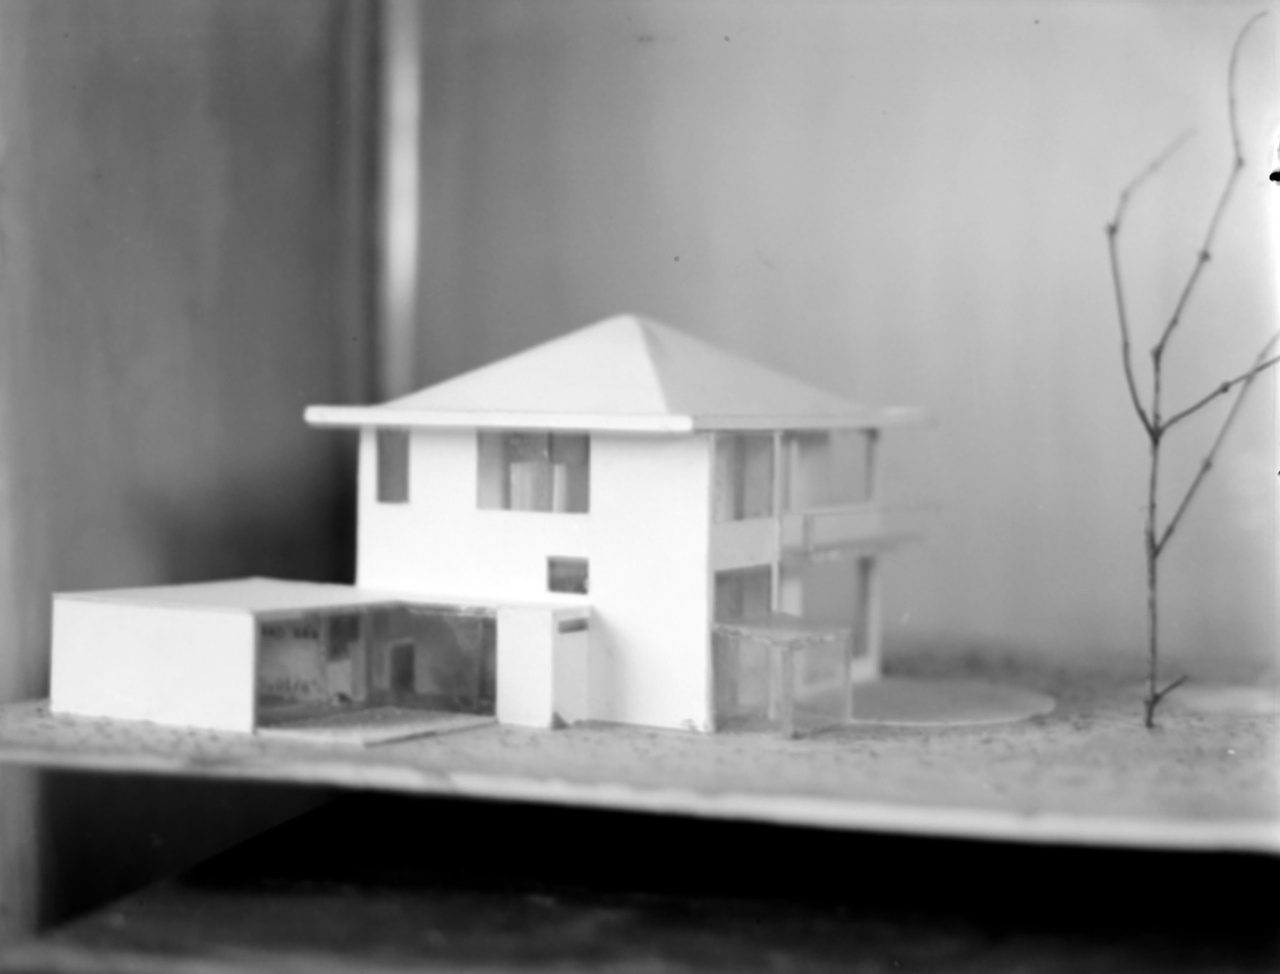 Afbeelding van woning Hillebrand, maquette, hoek achterkant en tuinkant